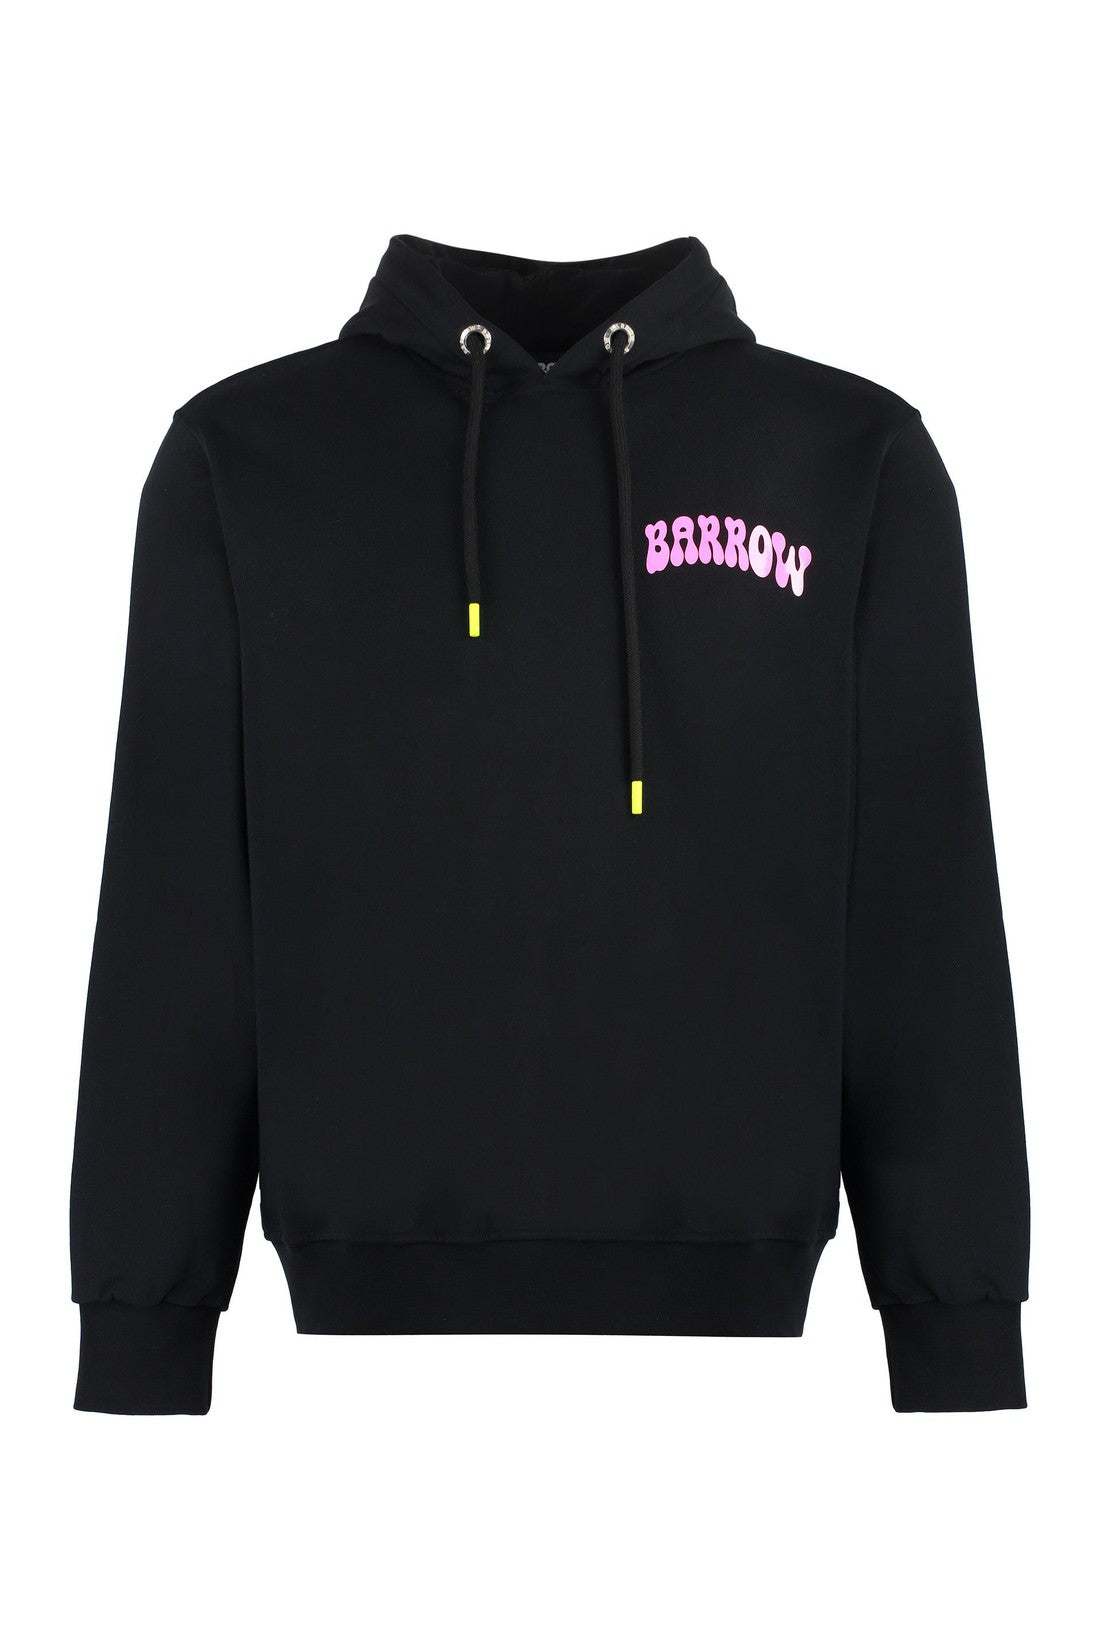 Barrow-OUTLET-SALE-Logo cotton hoodie-ARCHIVIST